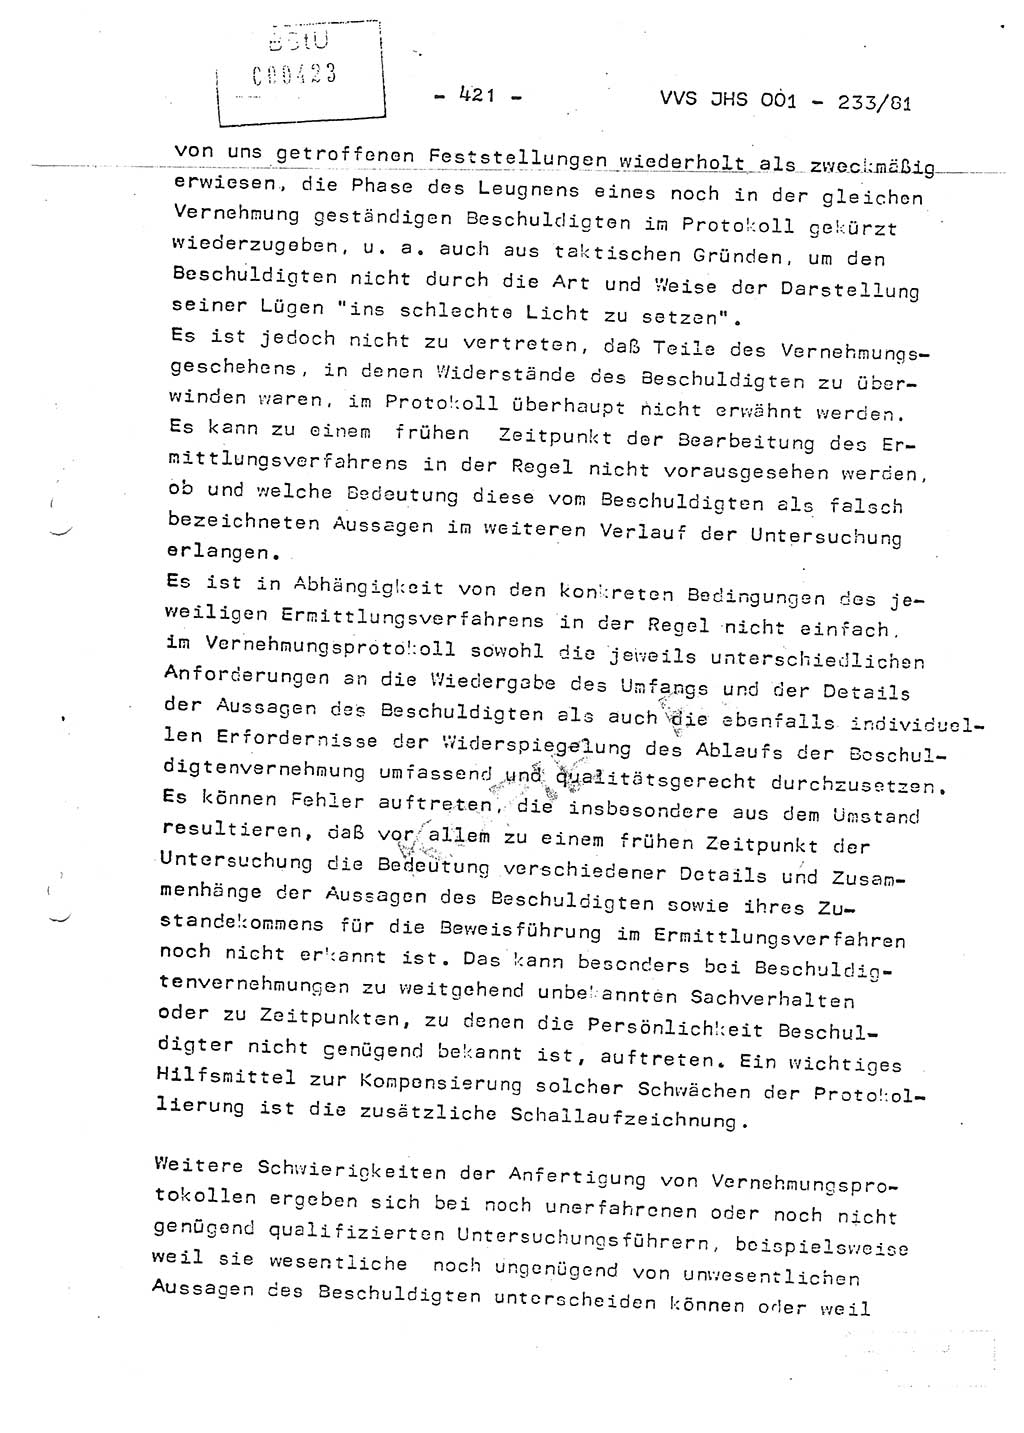 Dissertation Oberstleutnant Horst Zank (JHS), Oberstleutnant Dr. Karl-Heinz Knoblauch (JHS), Oberstleutnant Gustav-Adolf Kowalewski (HA Ⅸ), Oberstleutnant Wolfgang Plötner (HA Ⅸ), Ministerium für Staatssicherheit (MfS) [Deutsche Demokratische Republik (DDR)], Juristische Hochschule (JHS), Vertrauliche Verschlußsache (VVS) o001-233/81, Potsdam 1981, Blatt 421 (Diss. MfS DDR JHS VVS o001-233/81 1981, Bl. 421)